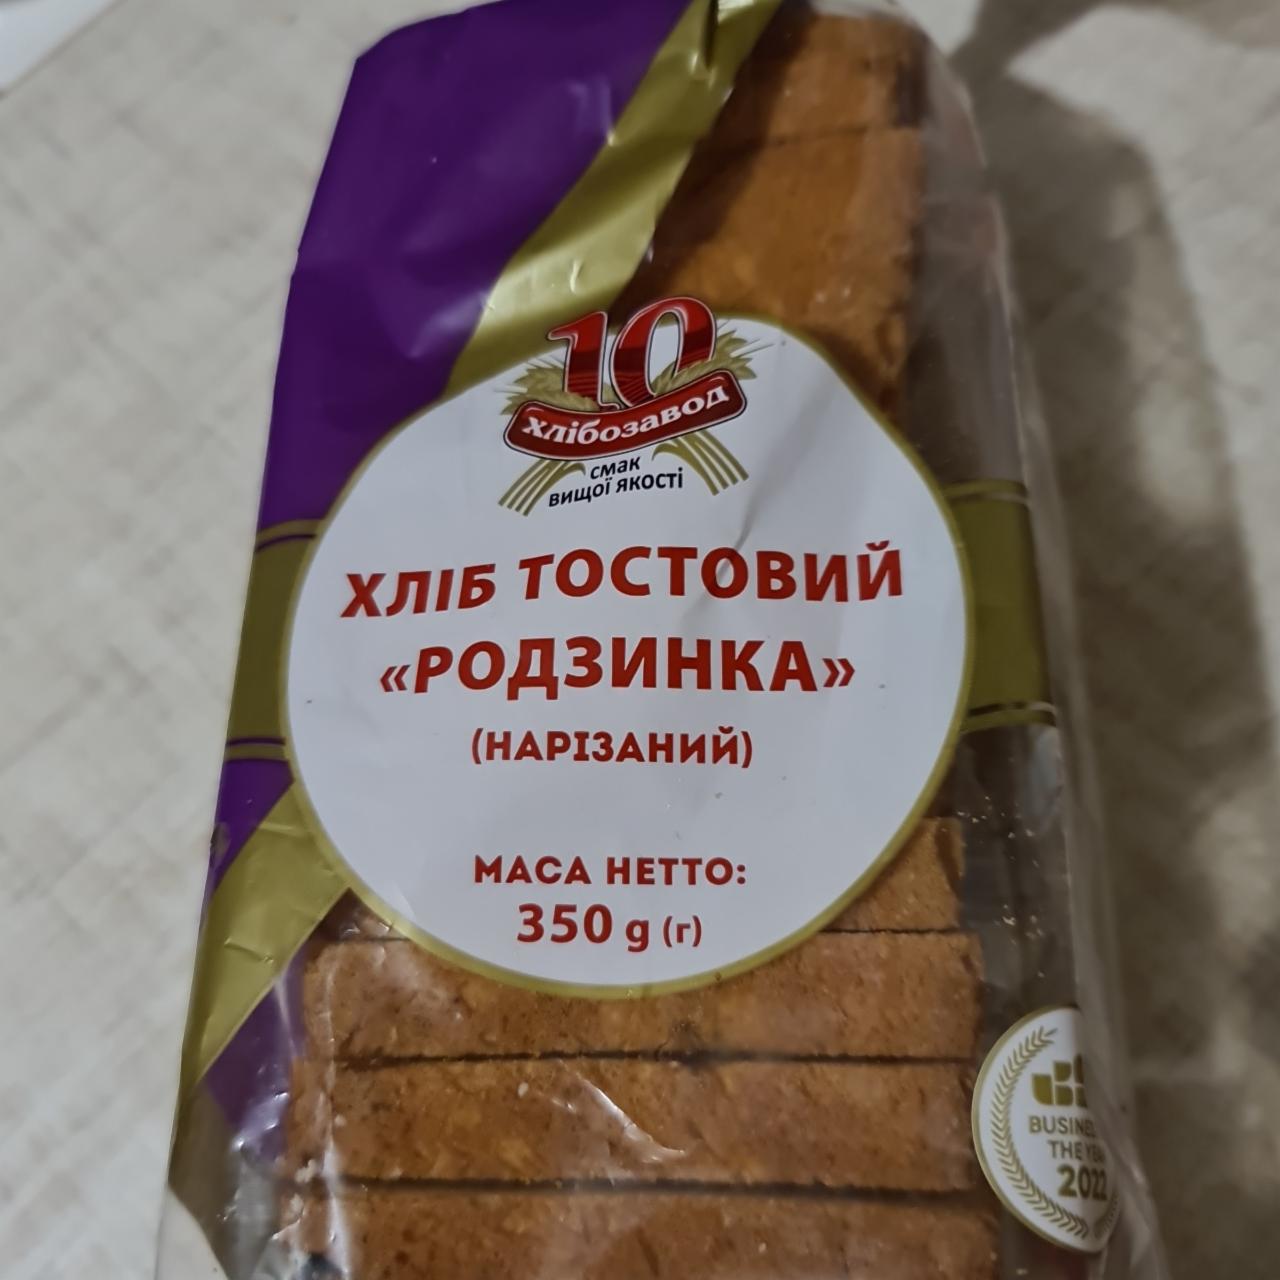 Фото - Хліб тостовий Родзинка 10 хлібозавод